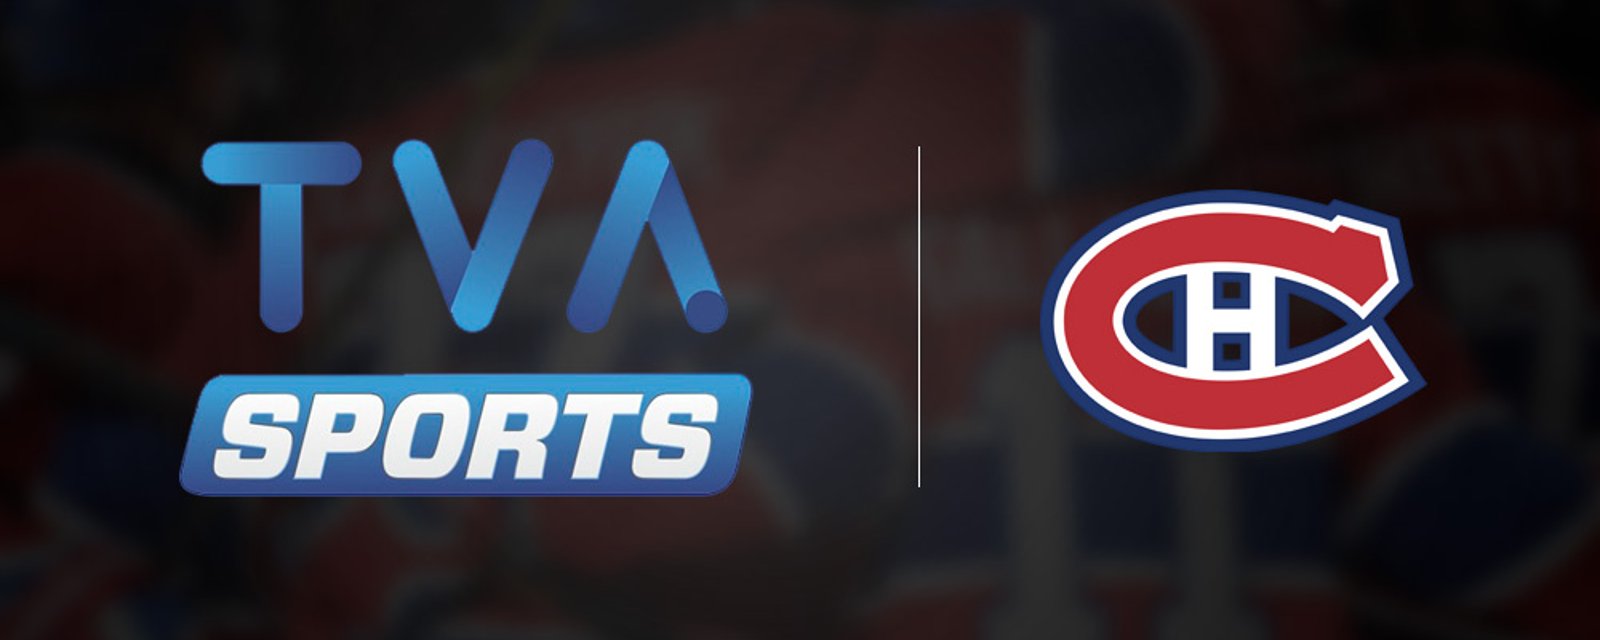 TVA Sports pourra maintenant vous diffuser encore plus de pubs